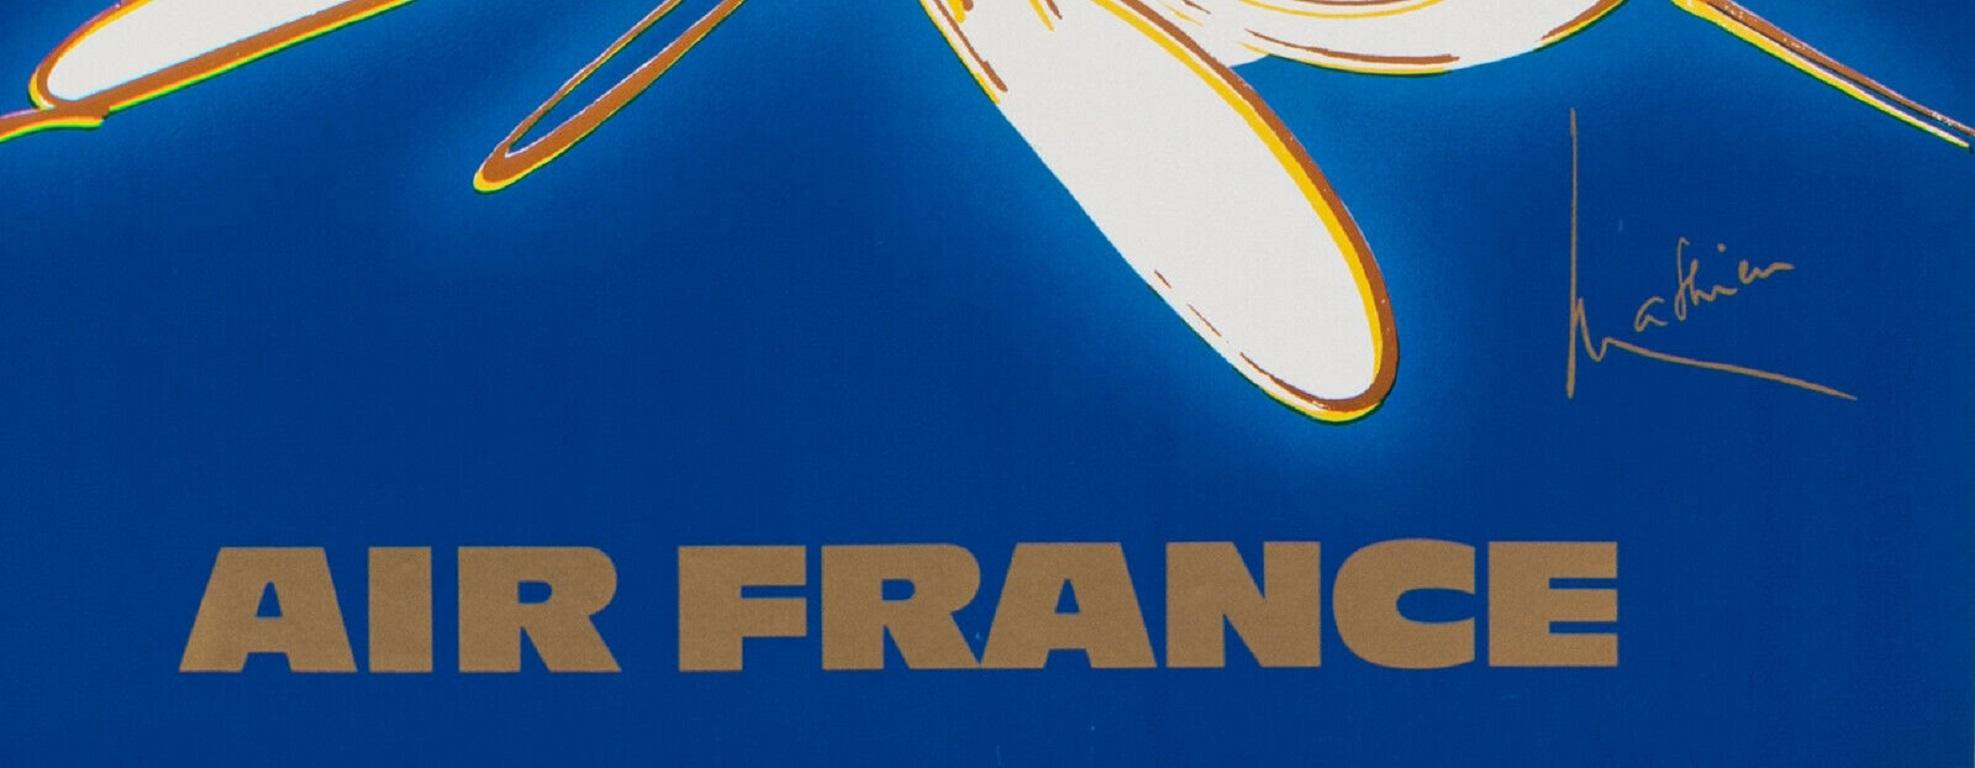 Original Vintage Poster-Mathieu Georges-Air France-Italie-Travel, 1967

Cette affiche fait la promotion des voyages d'Air France en Italie.

Georges Mathieu est un peintre autodidacte et un théoricien qui a commencé sa carrière artistique en